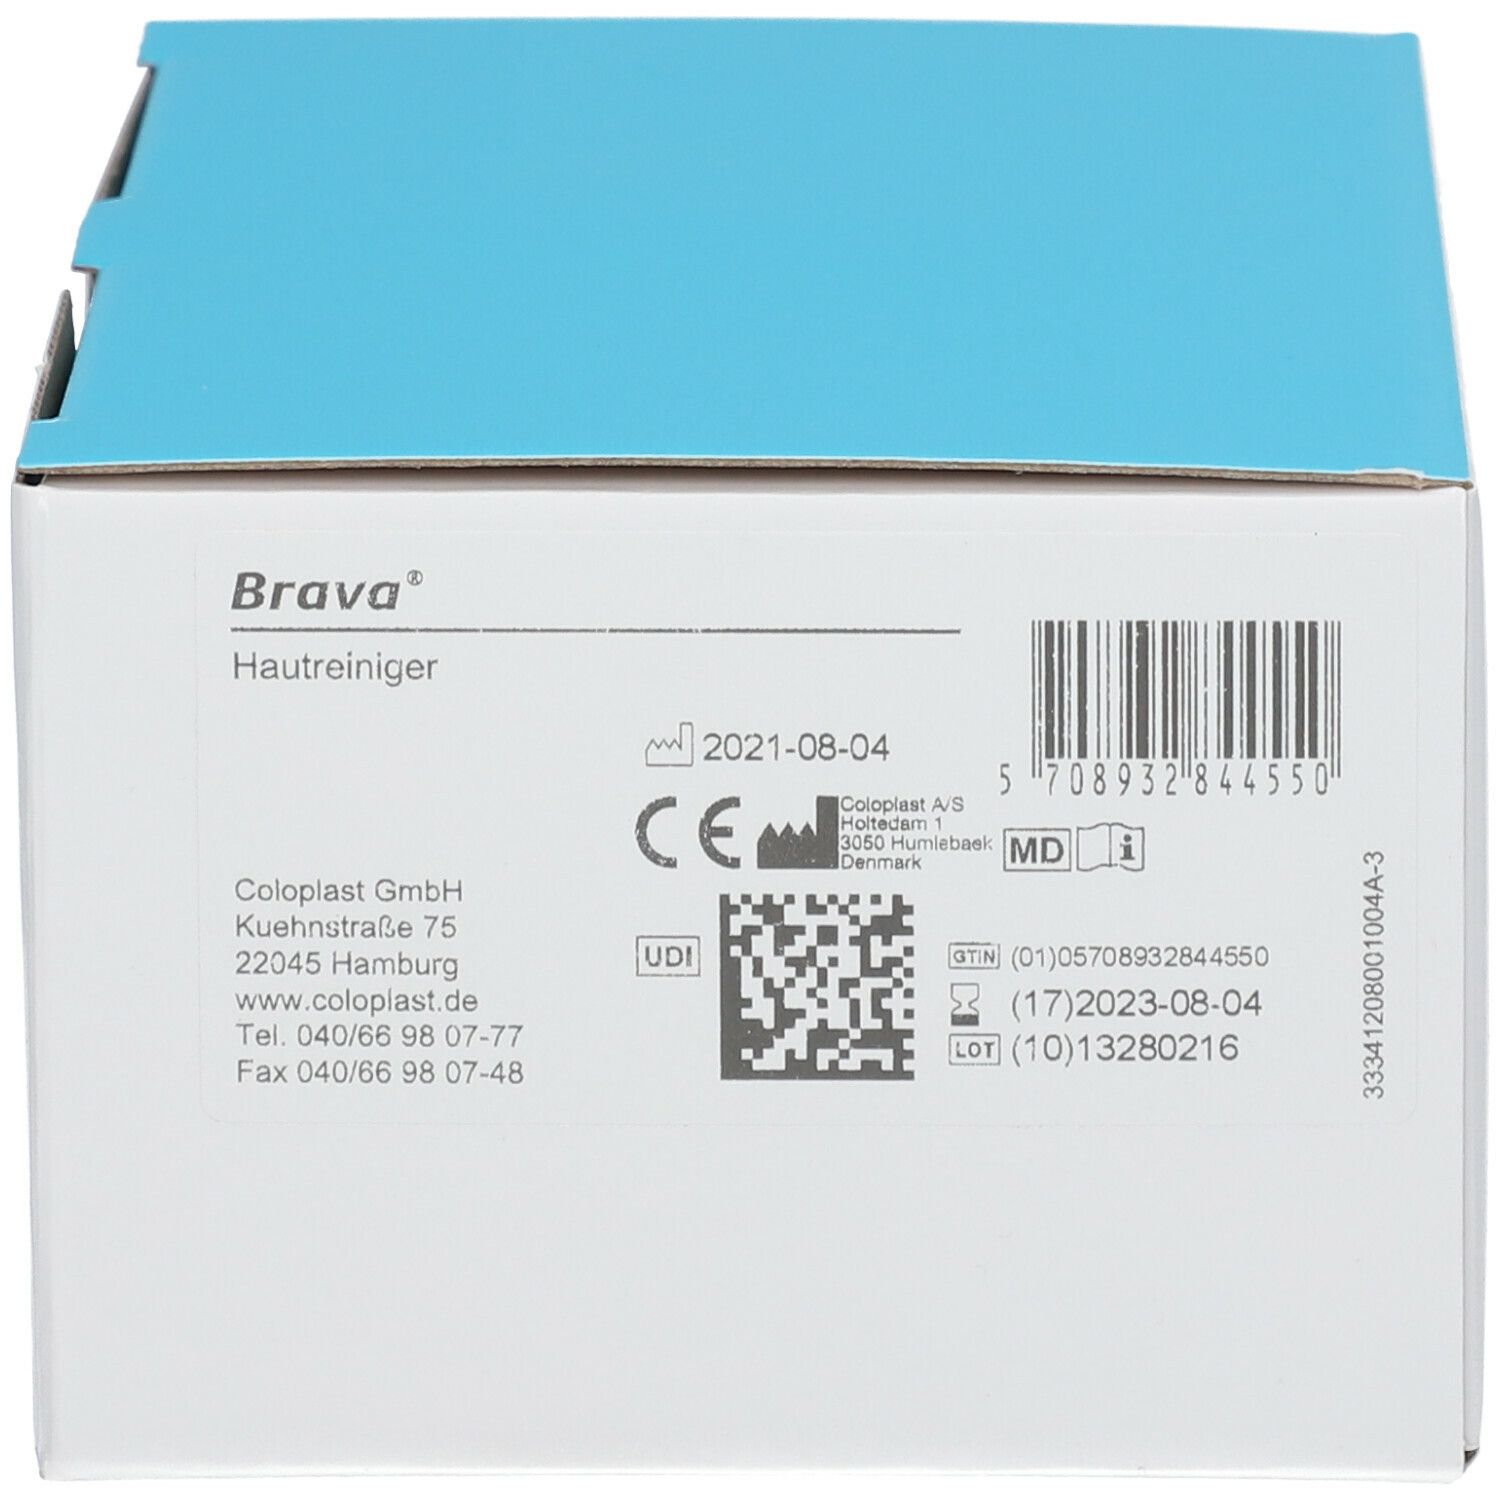 BRAVA® Hautreinigungstücher